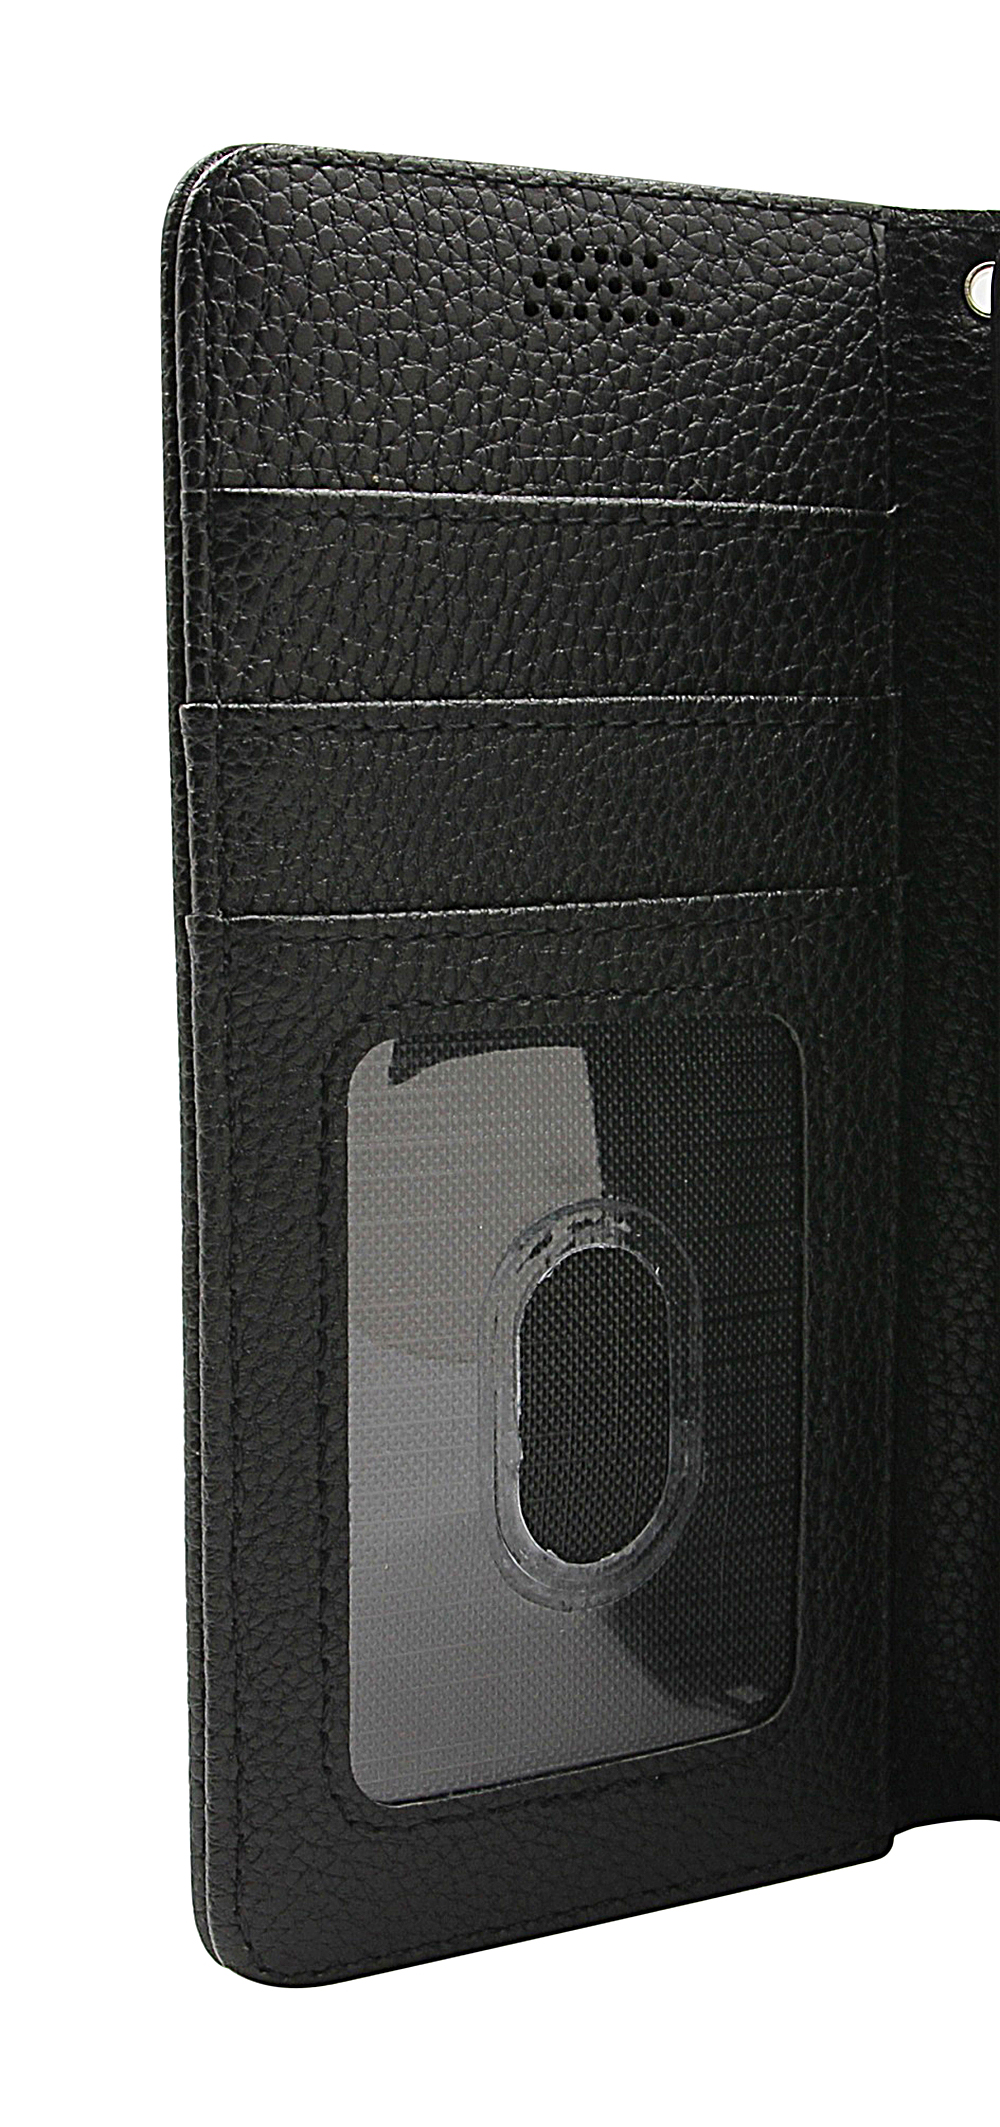 billigamobilskydd.seNew Standcase Wallet Nokia 1.4